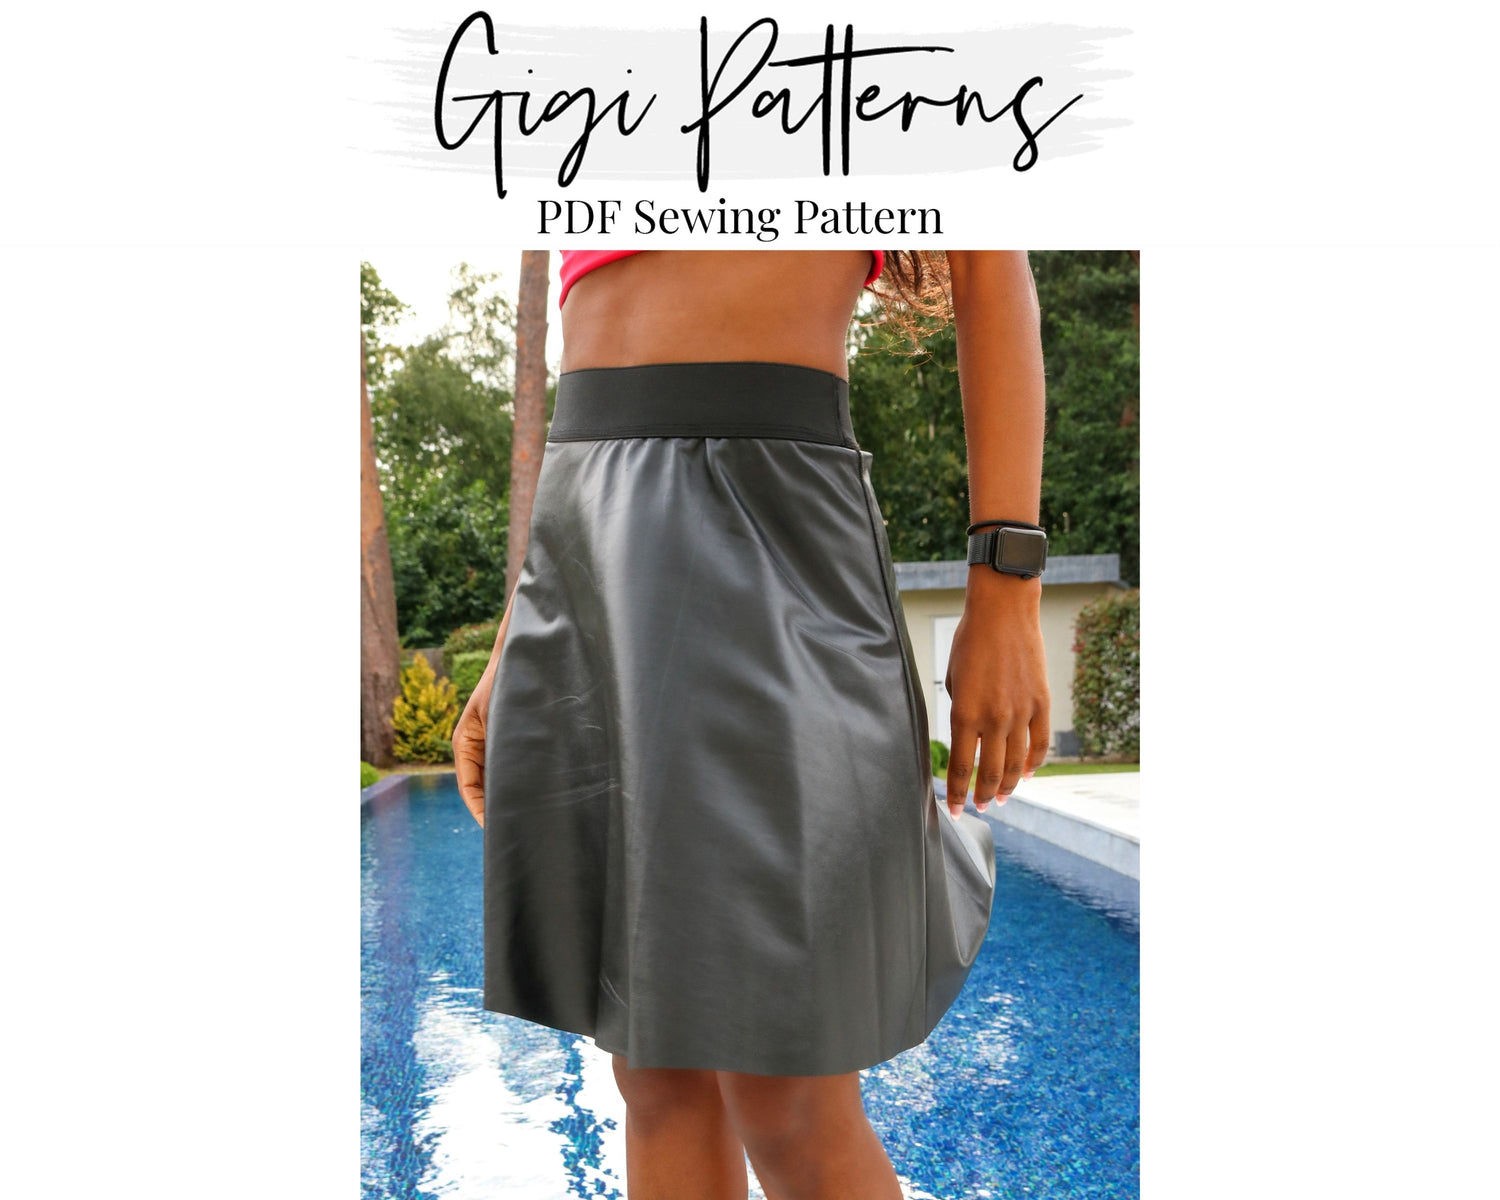 Free circle skirt downloadable pdf sewing pattern